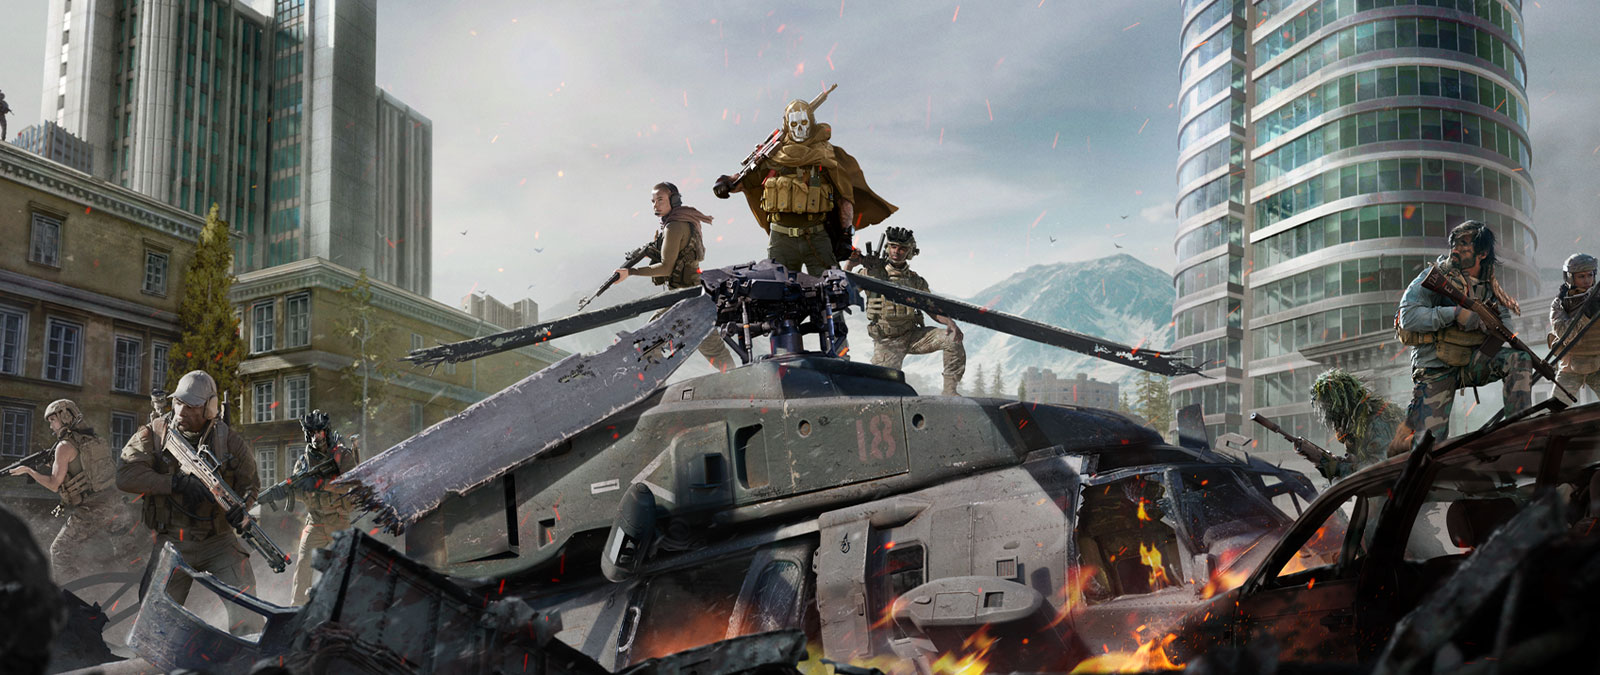 Ghost de Call of Duty: Modern Warfare avec masque de crâne et équipement furtif au sommet d'un hélicoptère écrasé avec plusieurs autres personnages